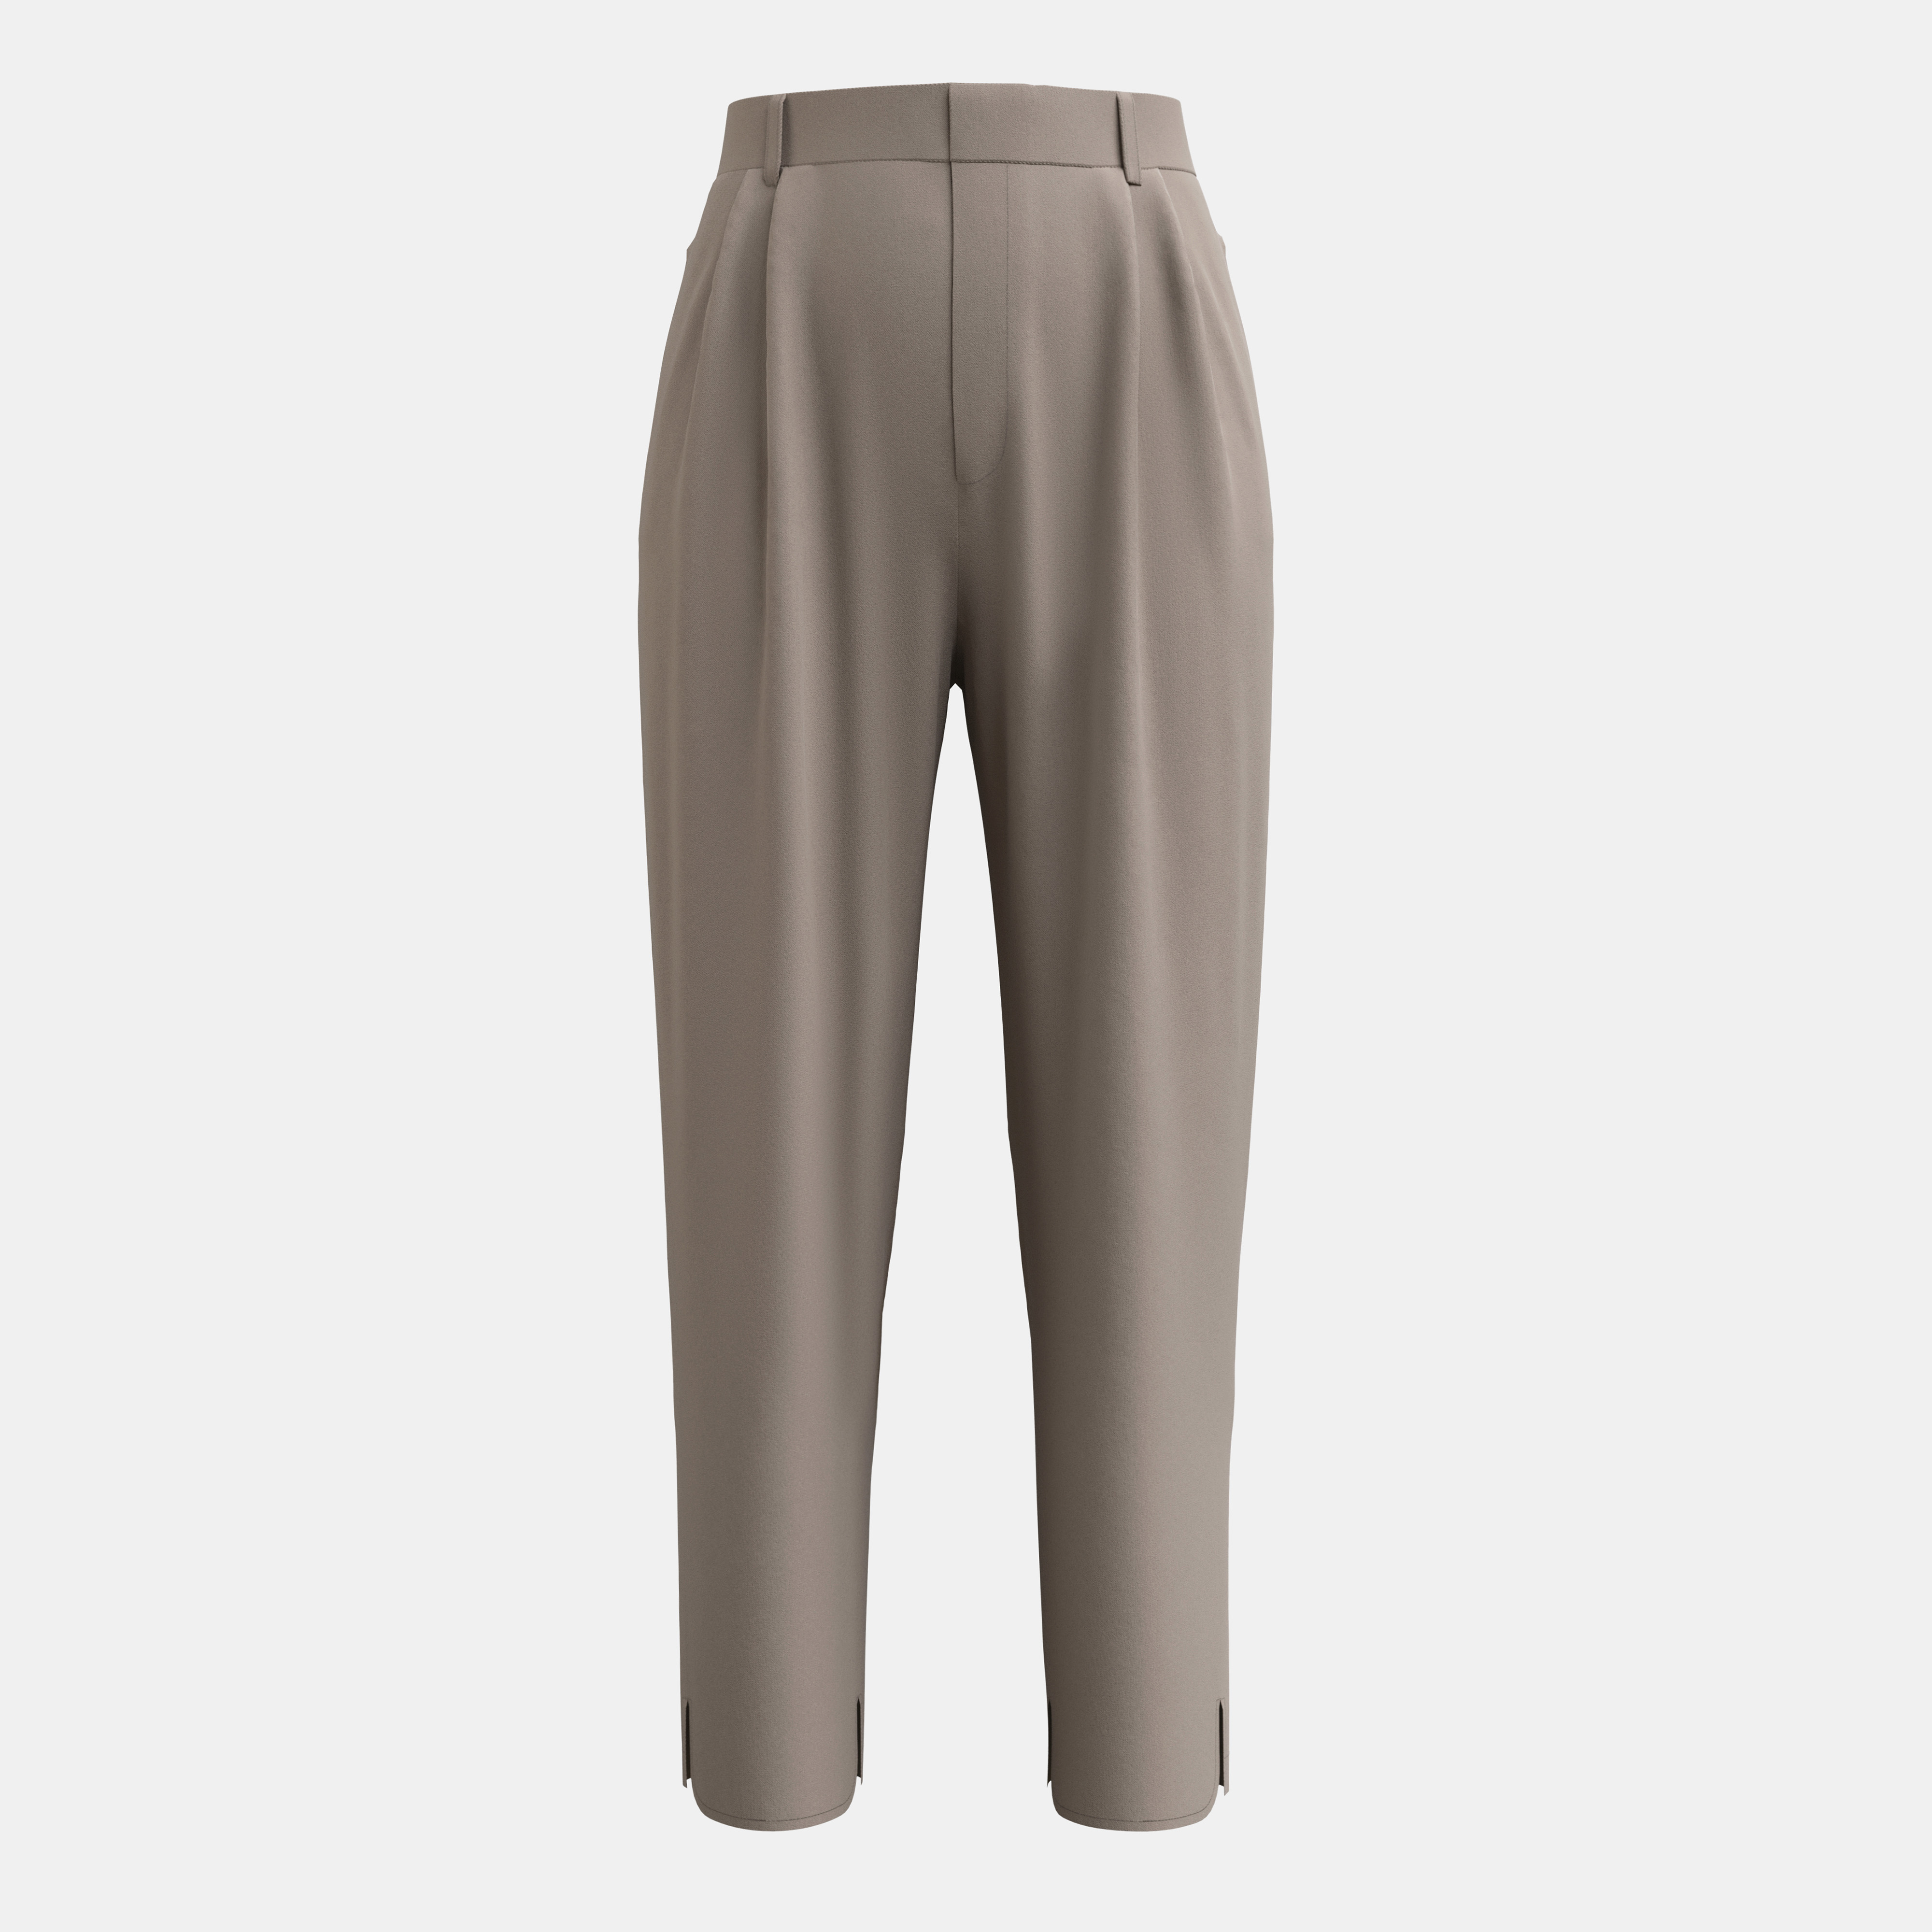 กางเกงขายาว BRANCHÉ กางเกง โรแมนติกใหม่แฟชั่นดีไซน์เนอร์และกางเกงสวมสบายสบายๆ2402000640101